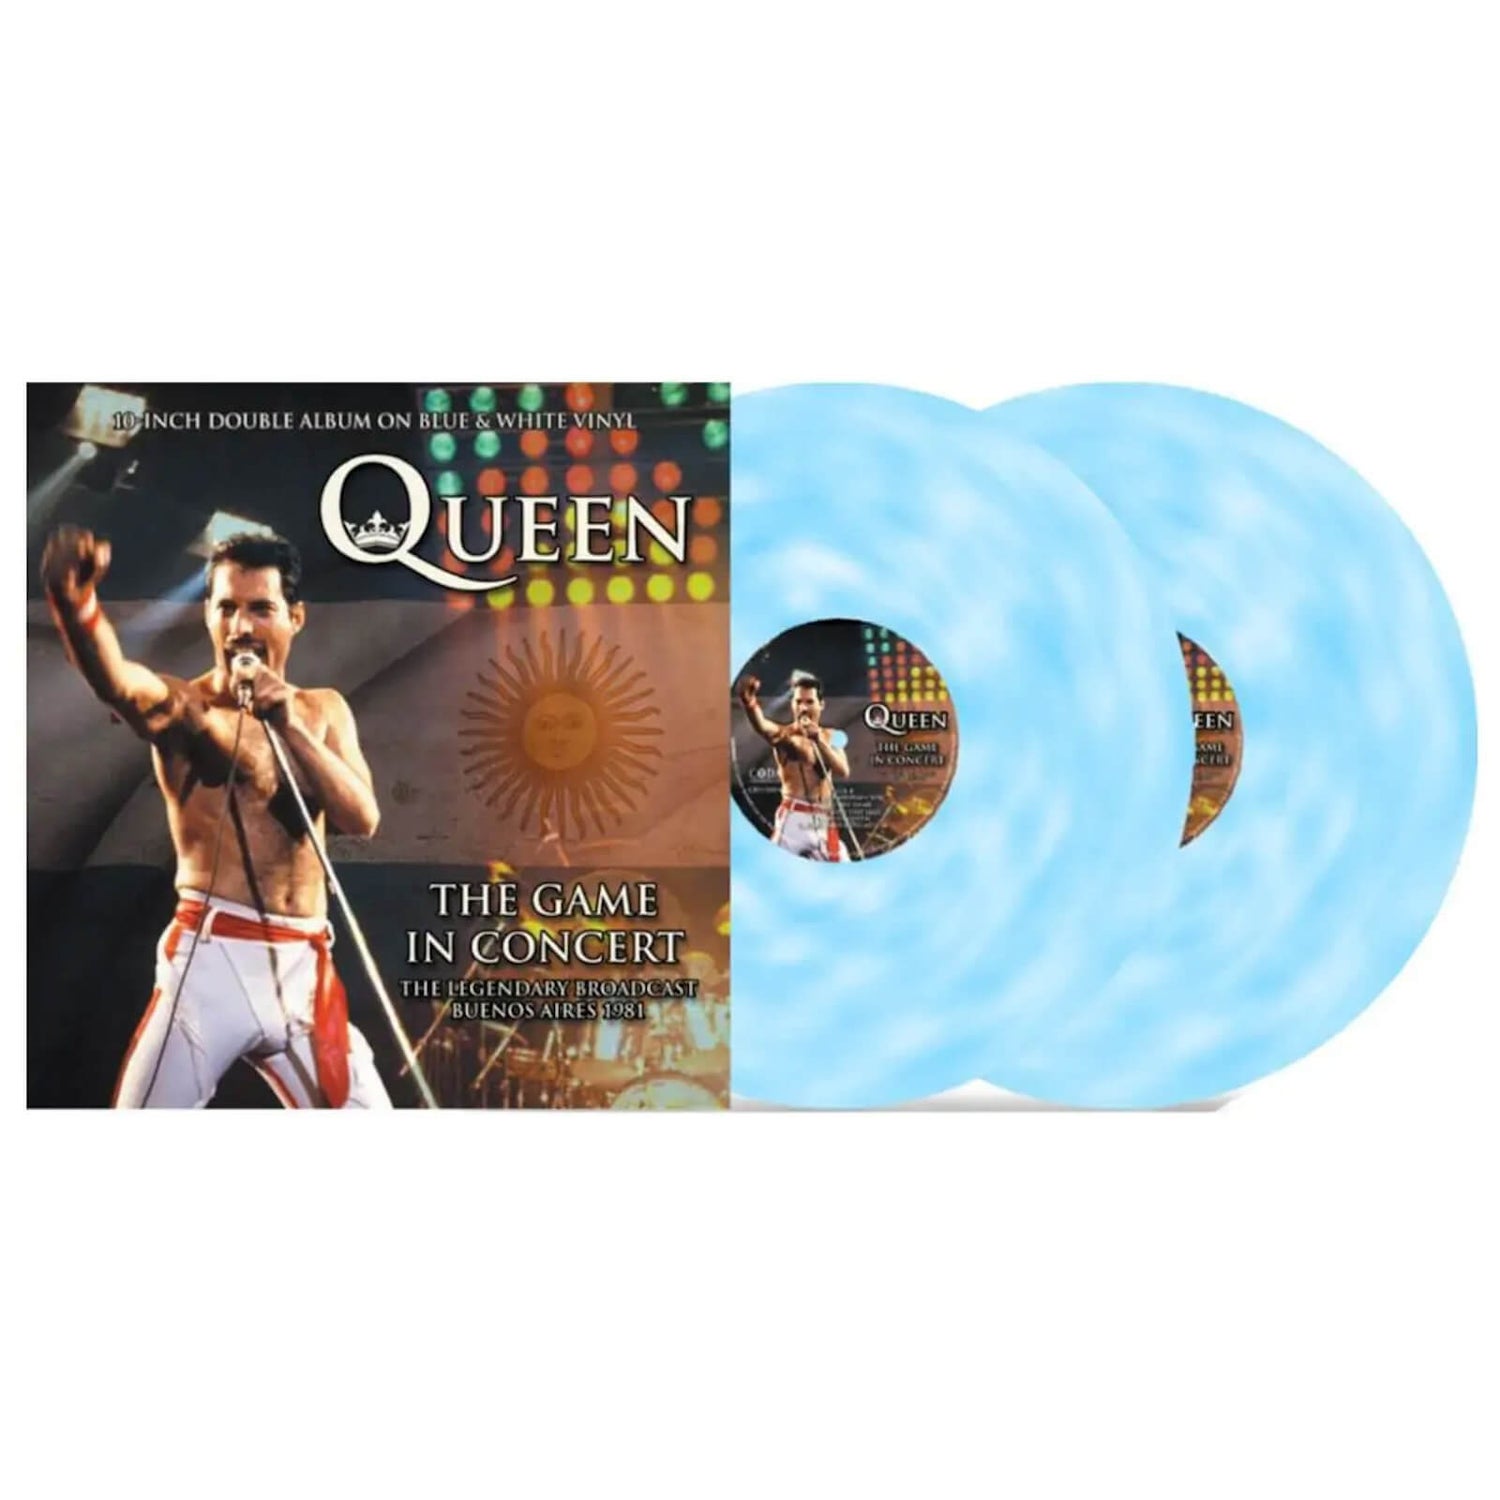 Queen - The Game In Concert (Blau & Weiß Vinyl) 2x10"